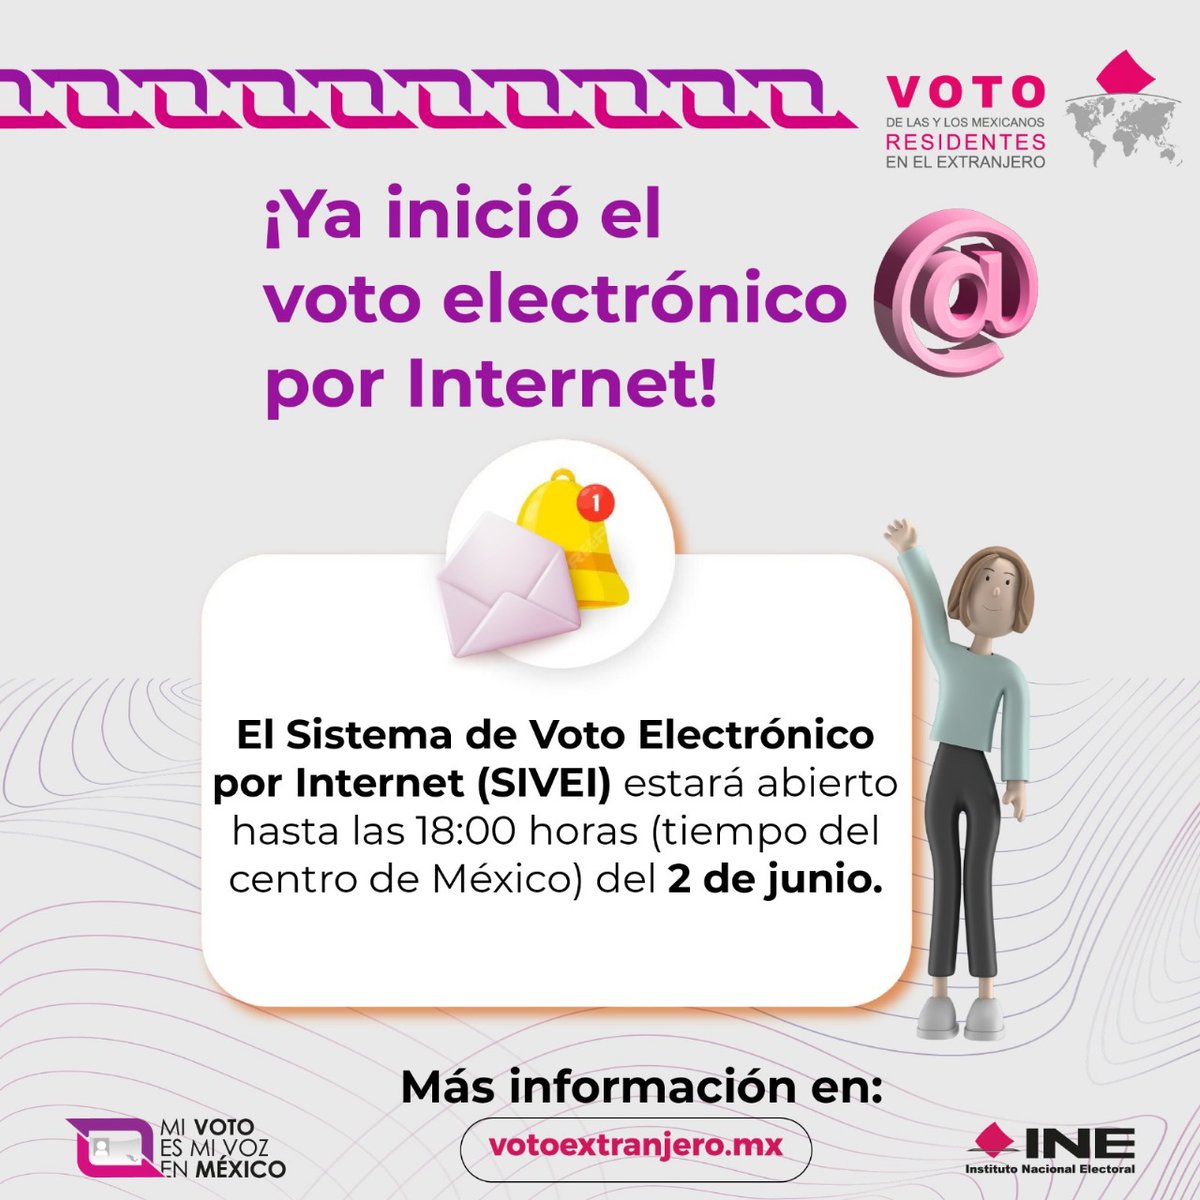 Elegiste la modalidad electrónica para votar desde el extranjero, ¡El periodo ya comenzó! 🗳 votoextranjero.mx #VotoExtranjero #INEMéxico